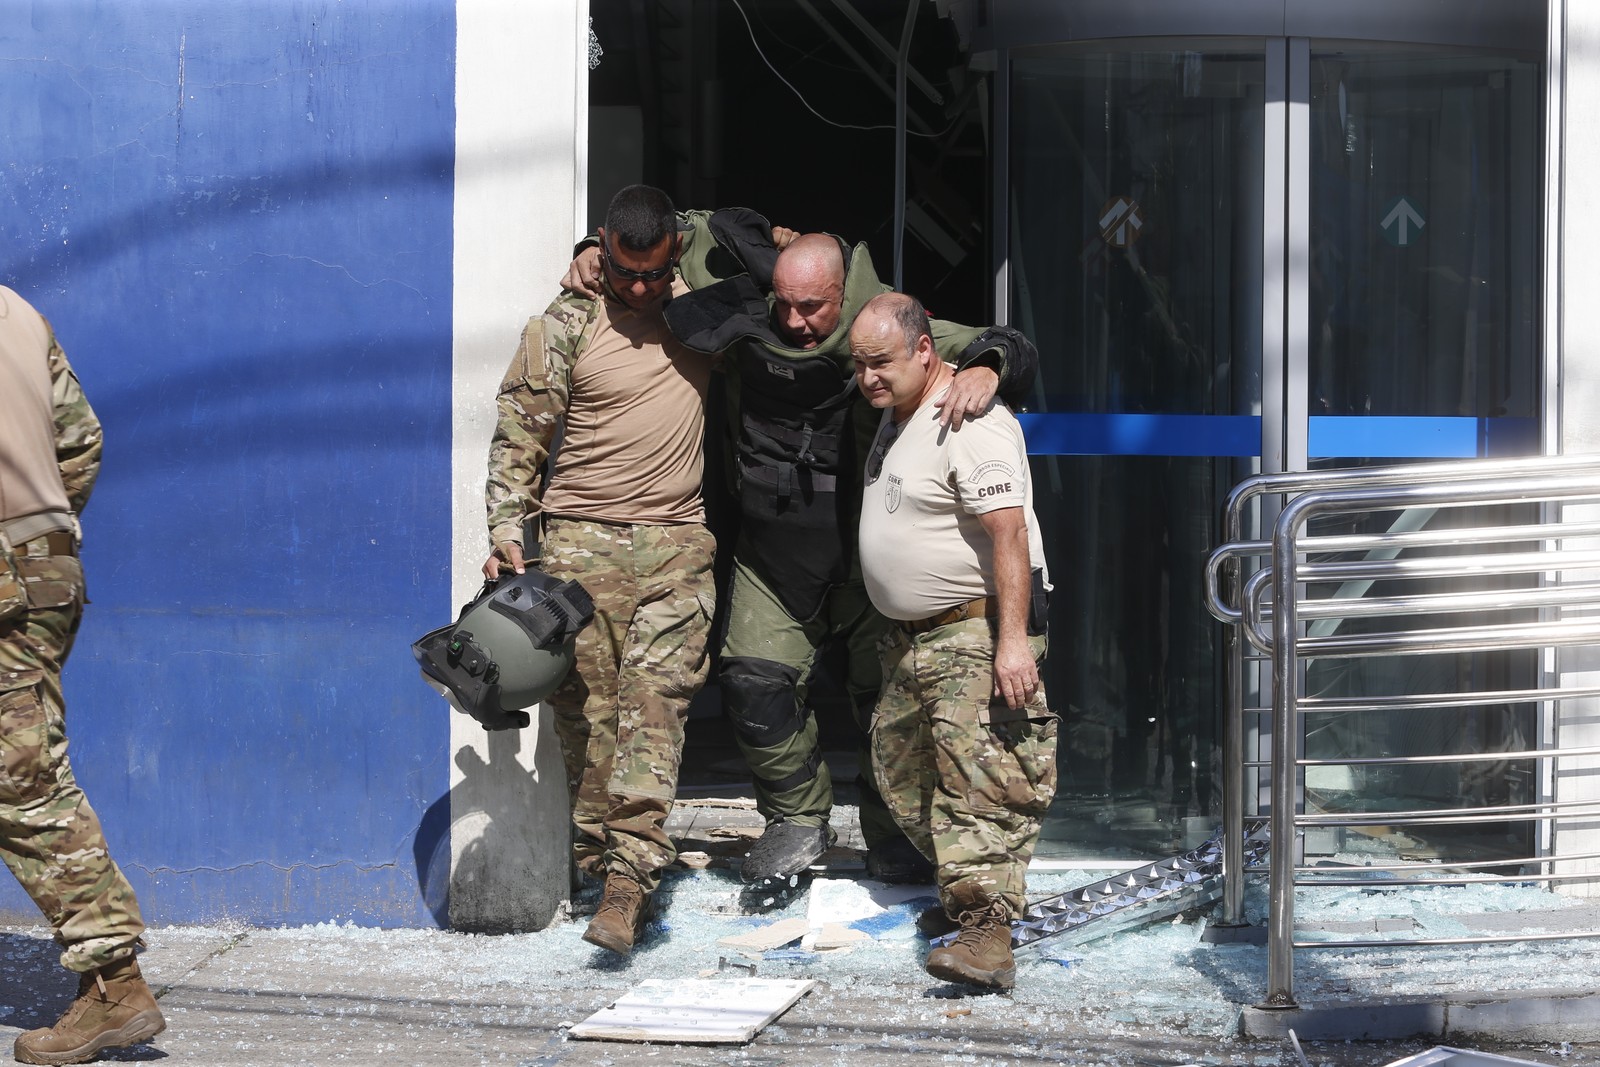 Bomba remanescente explodiu durante operação anti-bomba; agente é socorrido por colegas — Foto: Fabiano Rocha/Agência O Globo